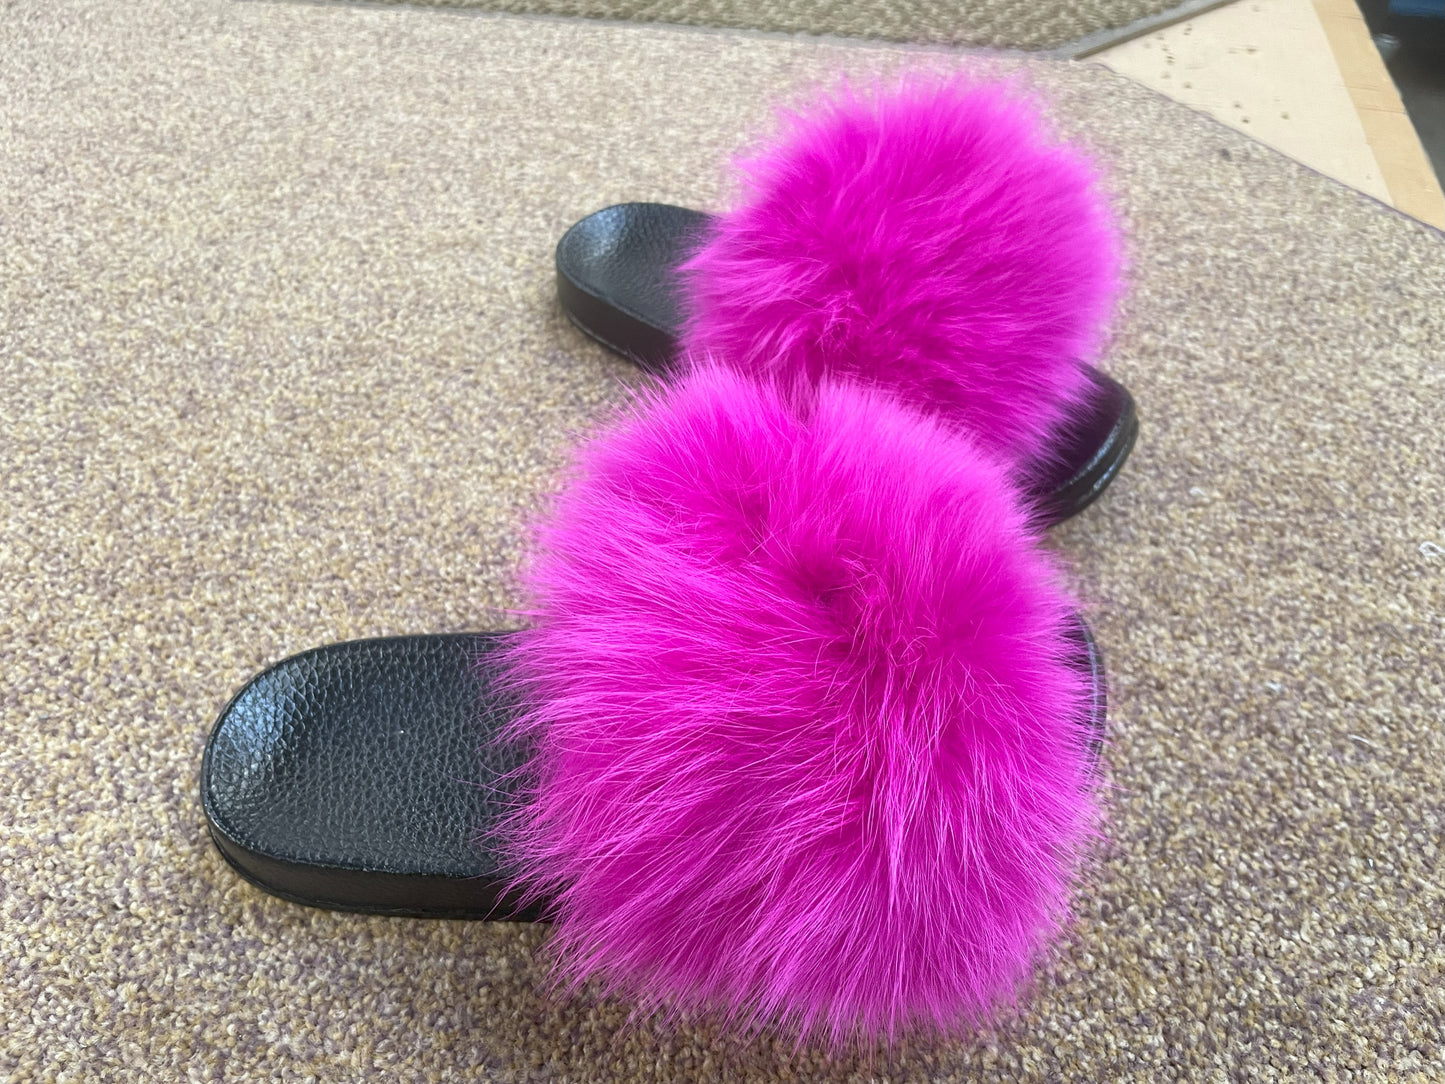 Poofty Fur Slide Slipper Sandal Pink-Solid